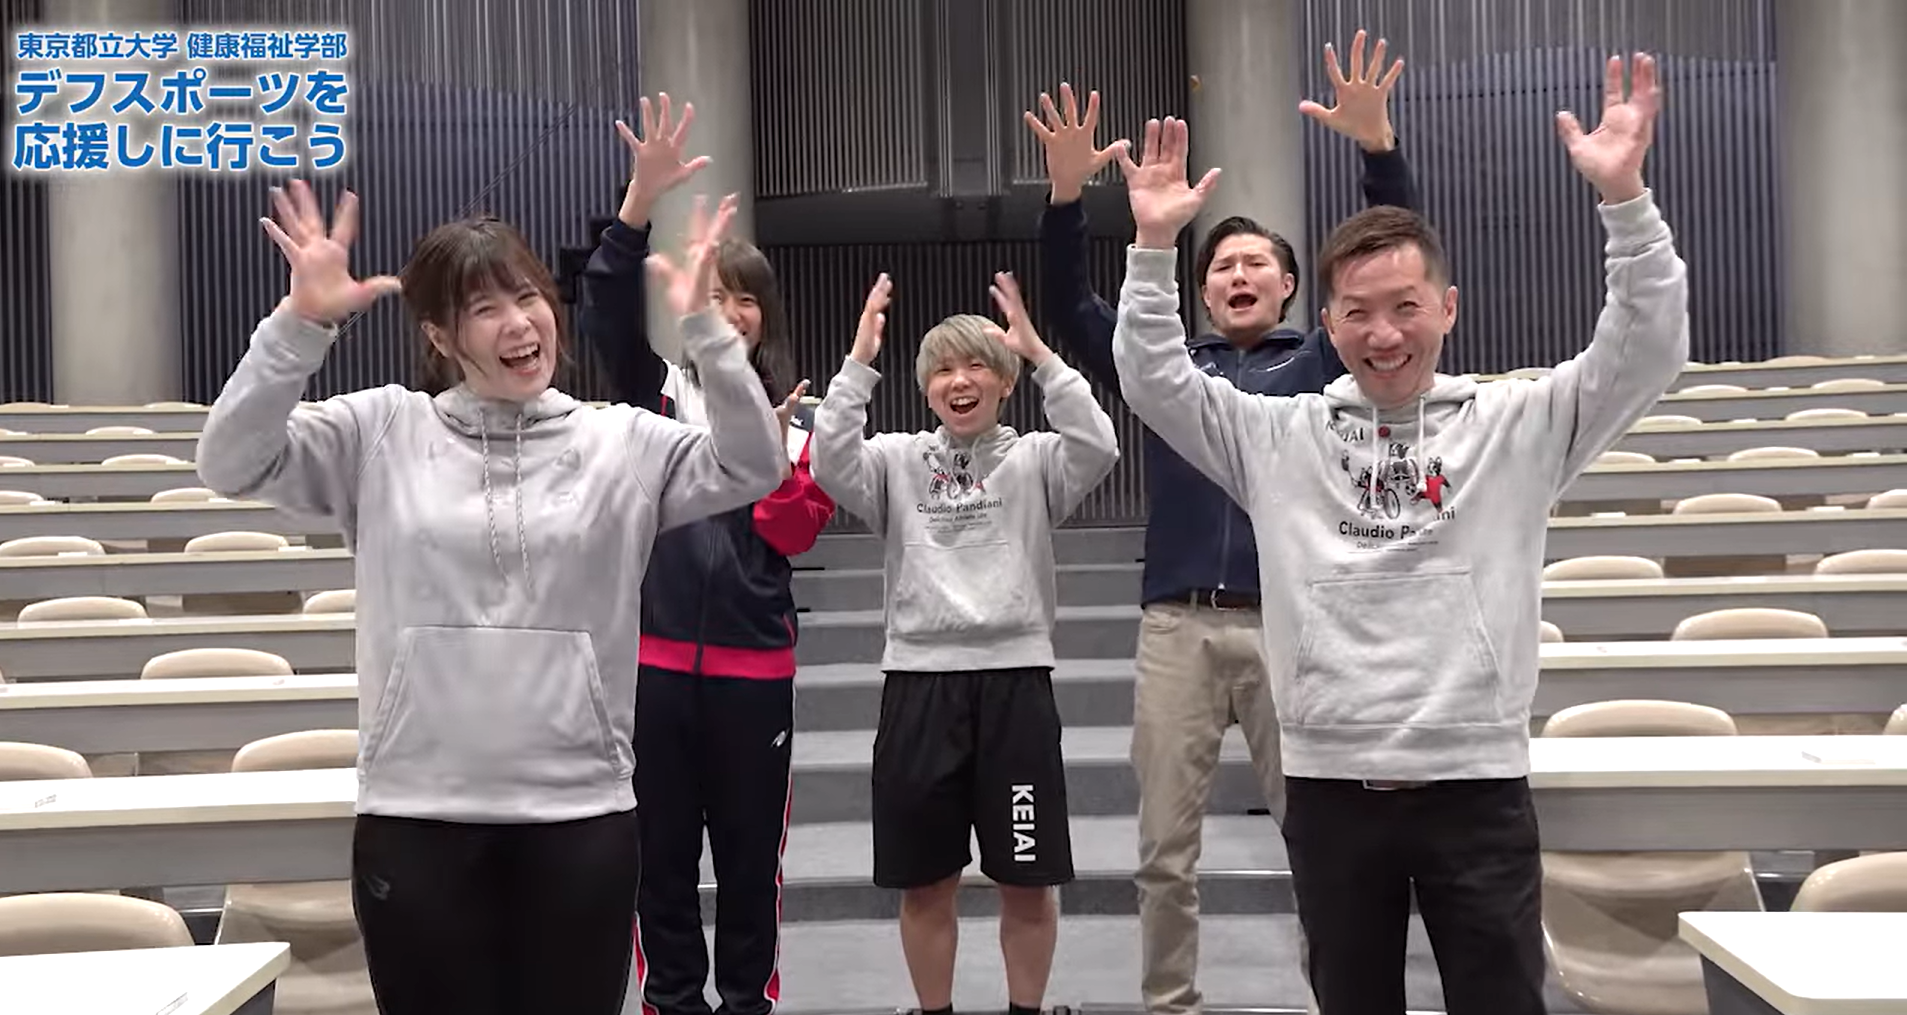 お知らせ：東京都立大学のYouTube動画にケイアイチャレンジドアスリートチームが出演しました